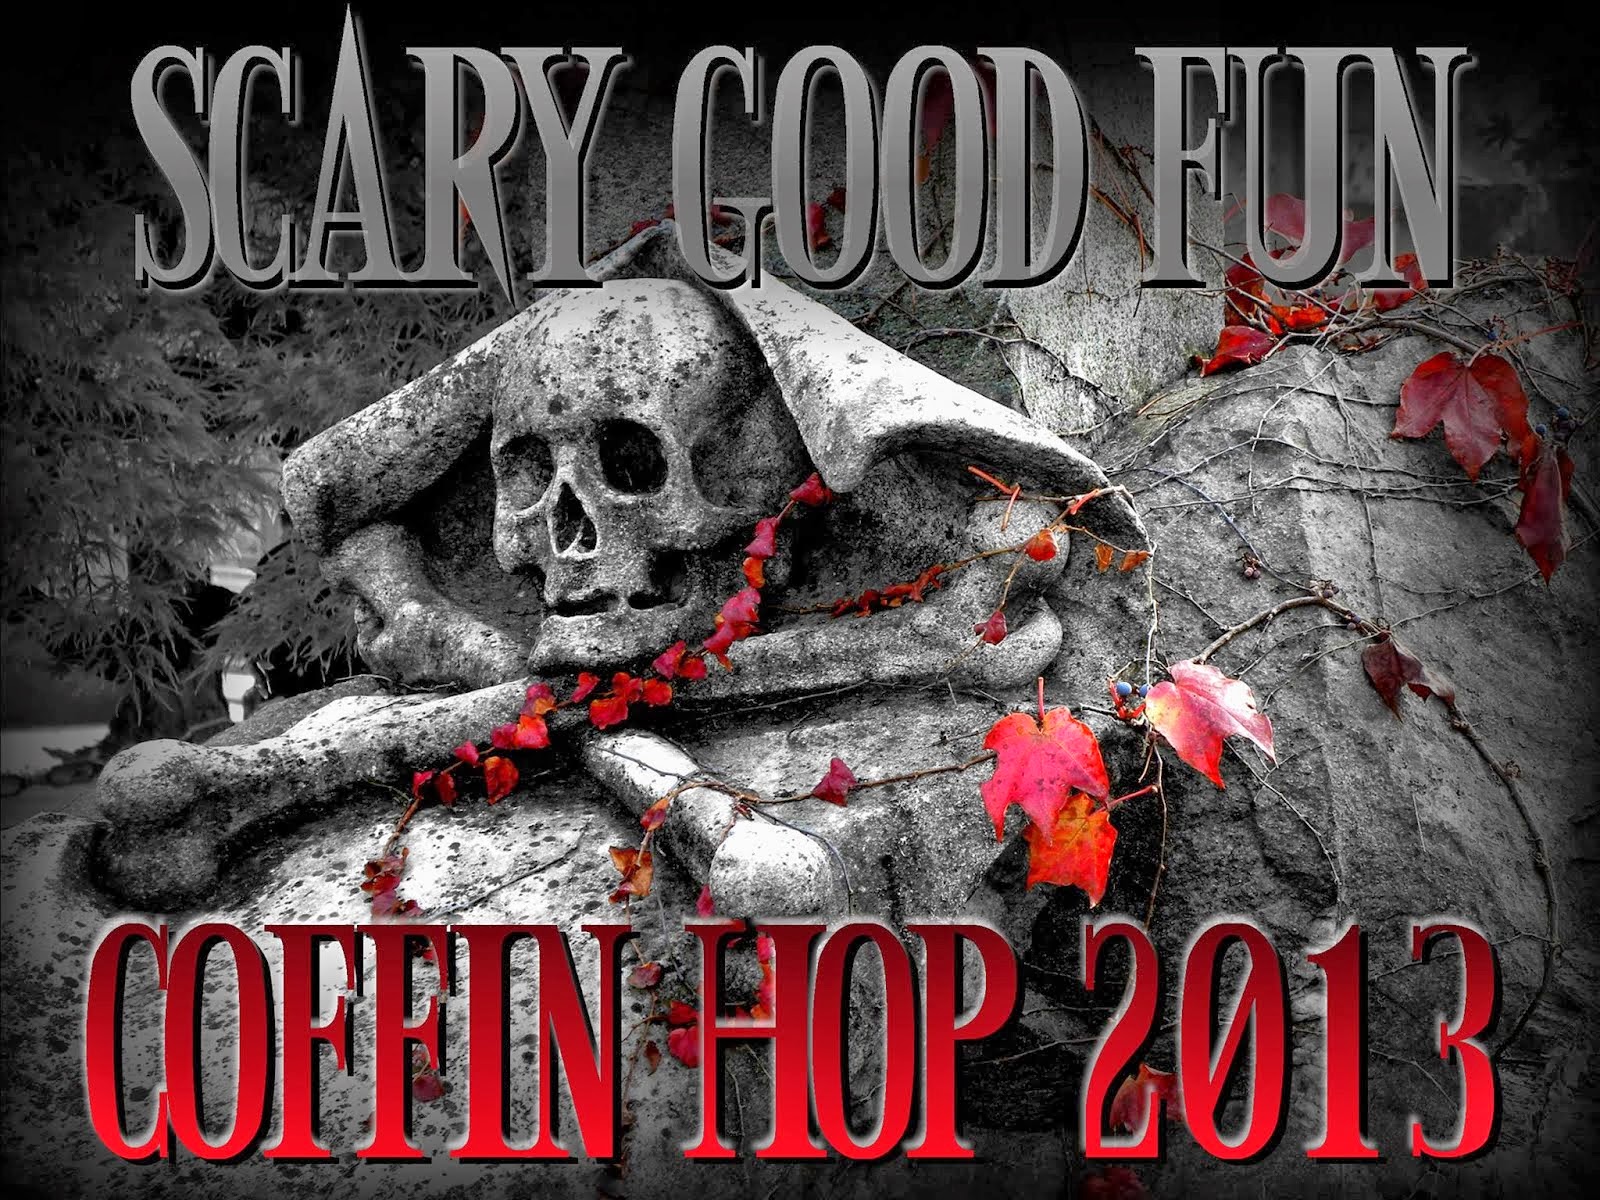 Coffin Hop 2013